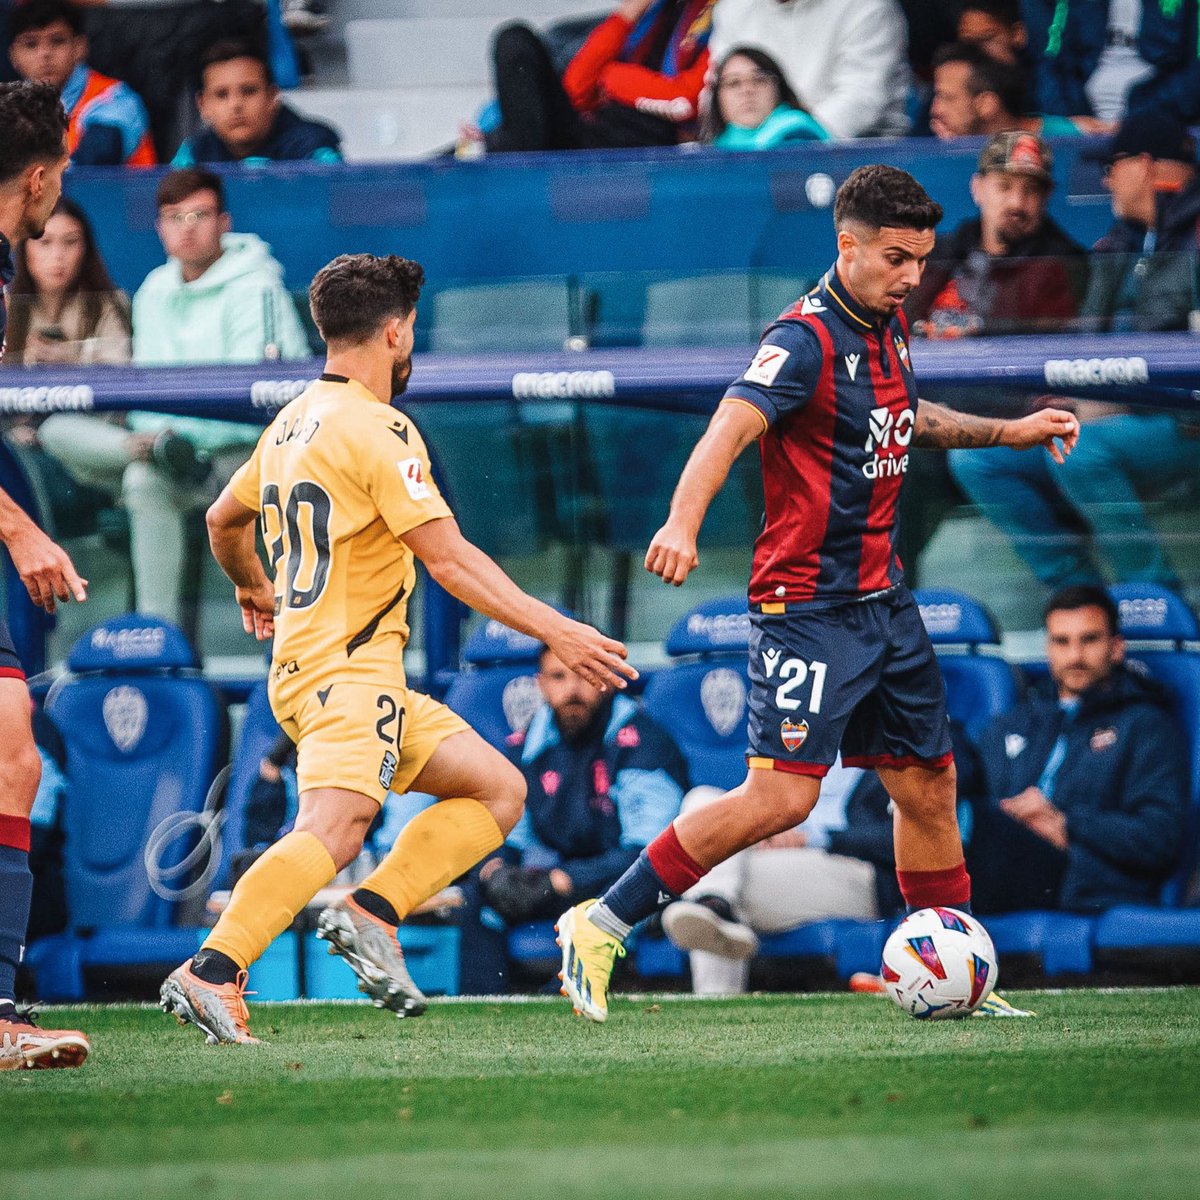 73’ |0-1| Relevos en el #LevanteUD ➡️ Rober Ibáñez y Bouldini ⬅️ Kochorashvili y Lozano #LevanteCartagena